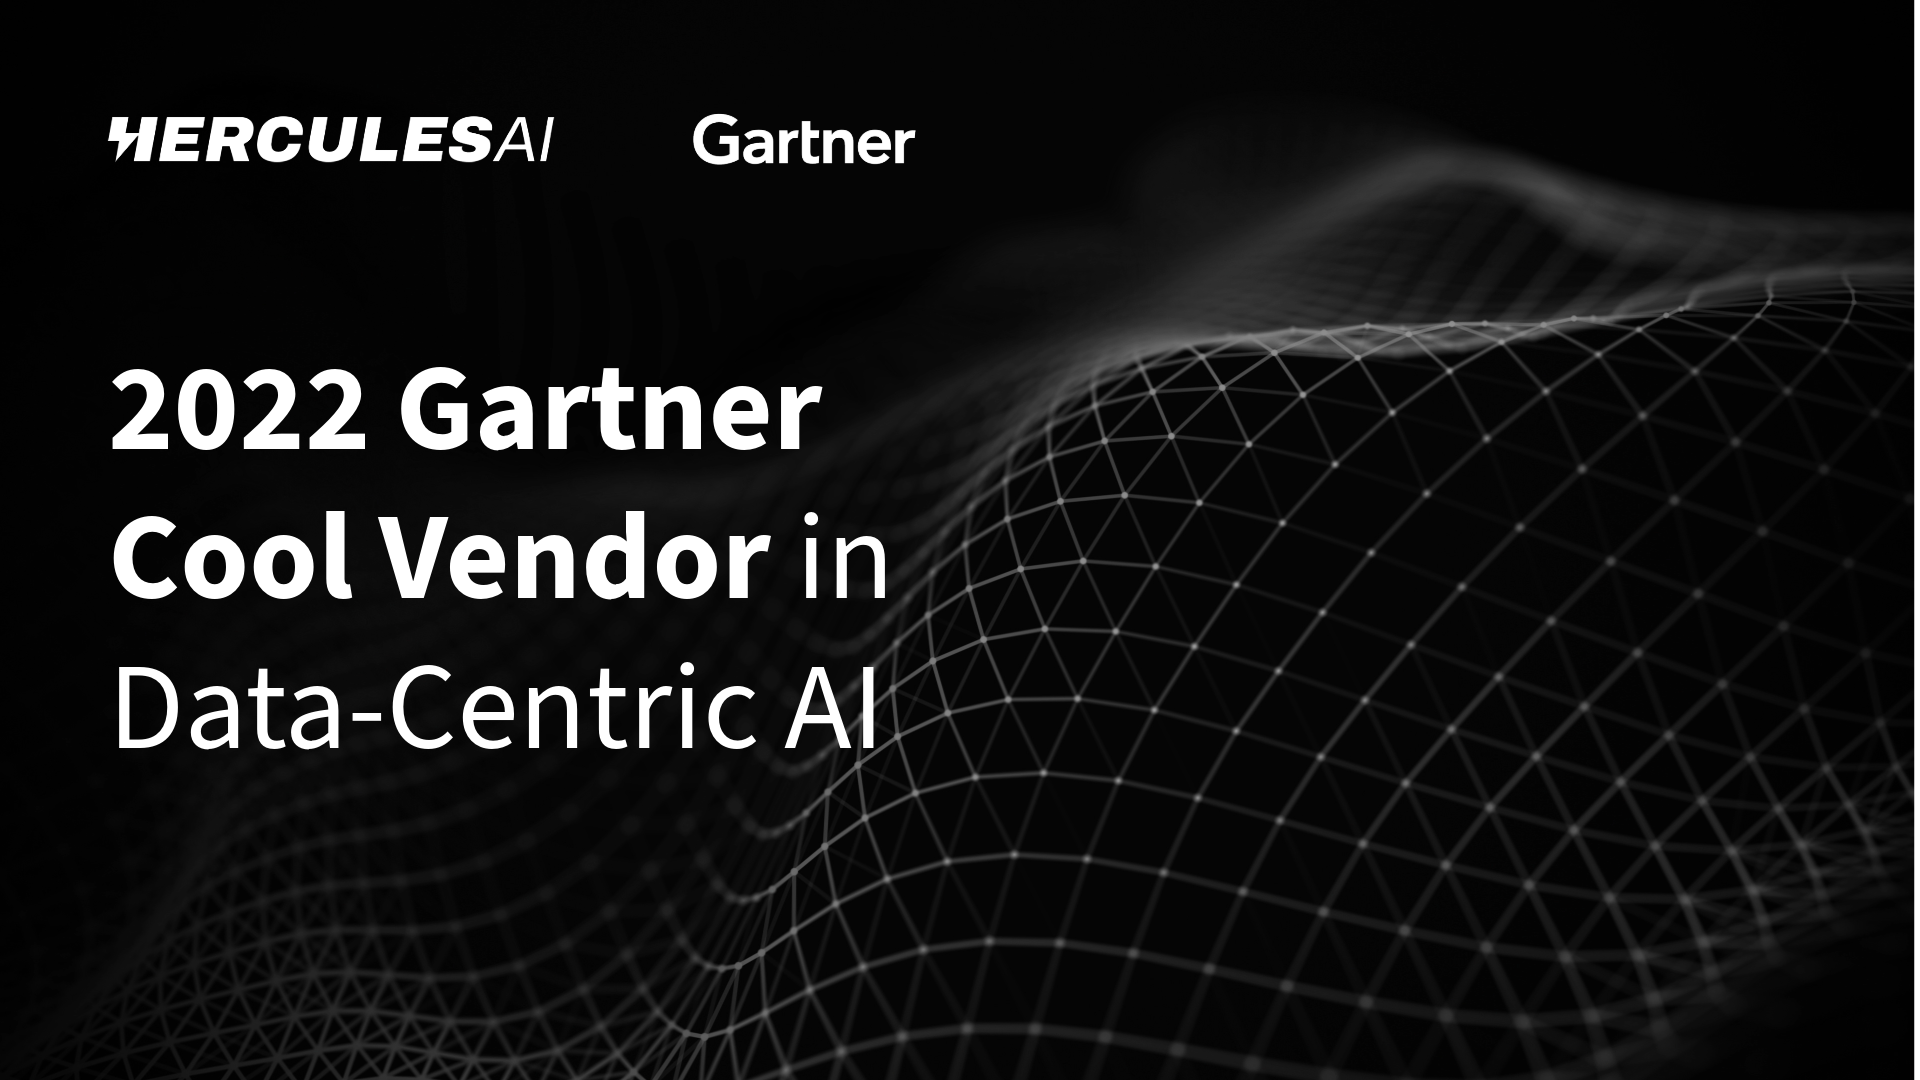 PR: ZERO Systems recognized as a 2022 Gartner Cool Vendor in Data-Centric AI